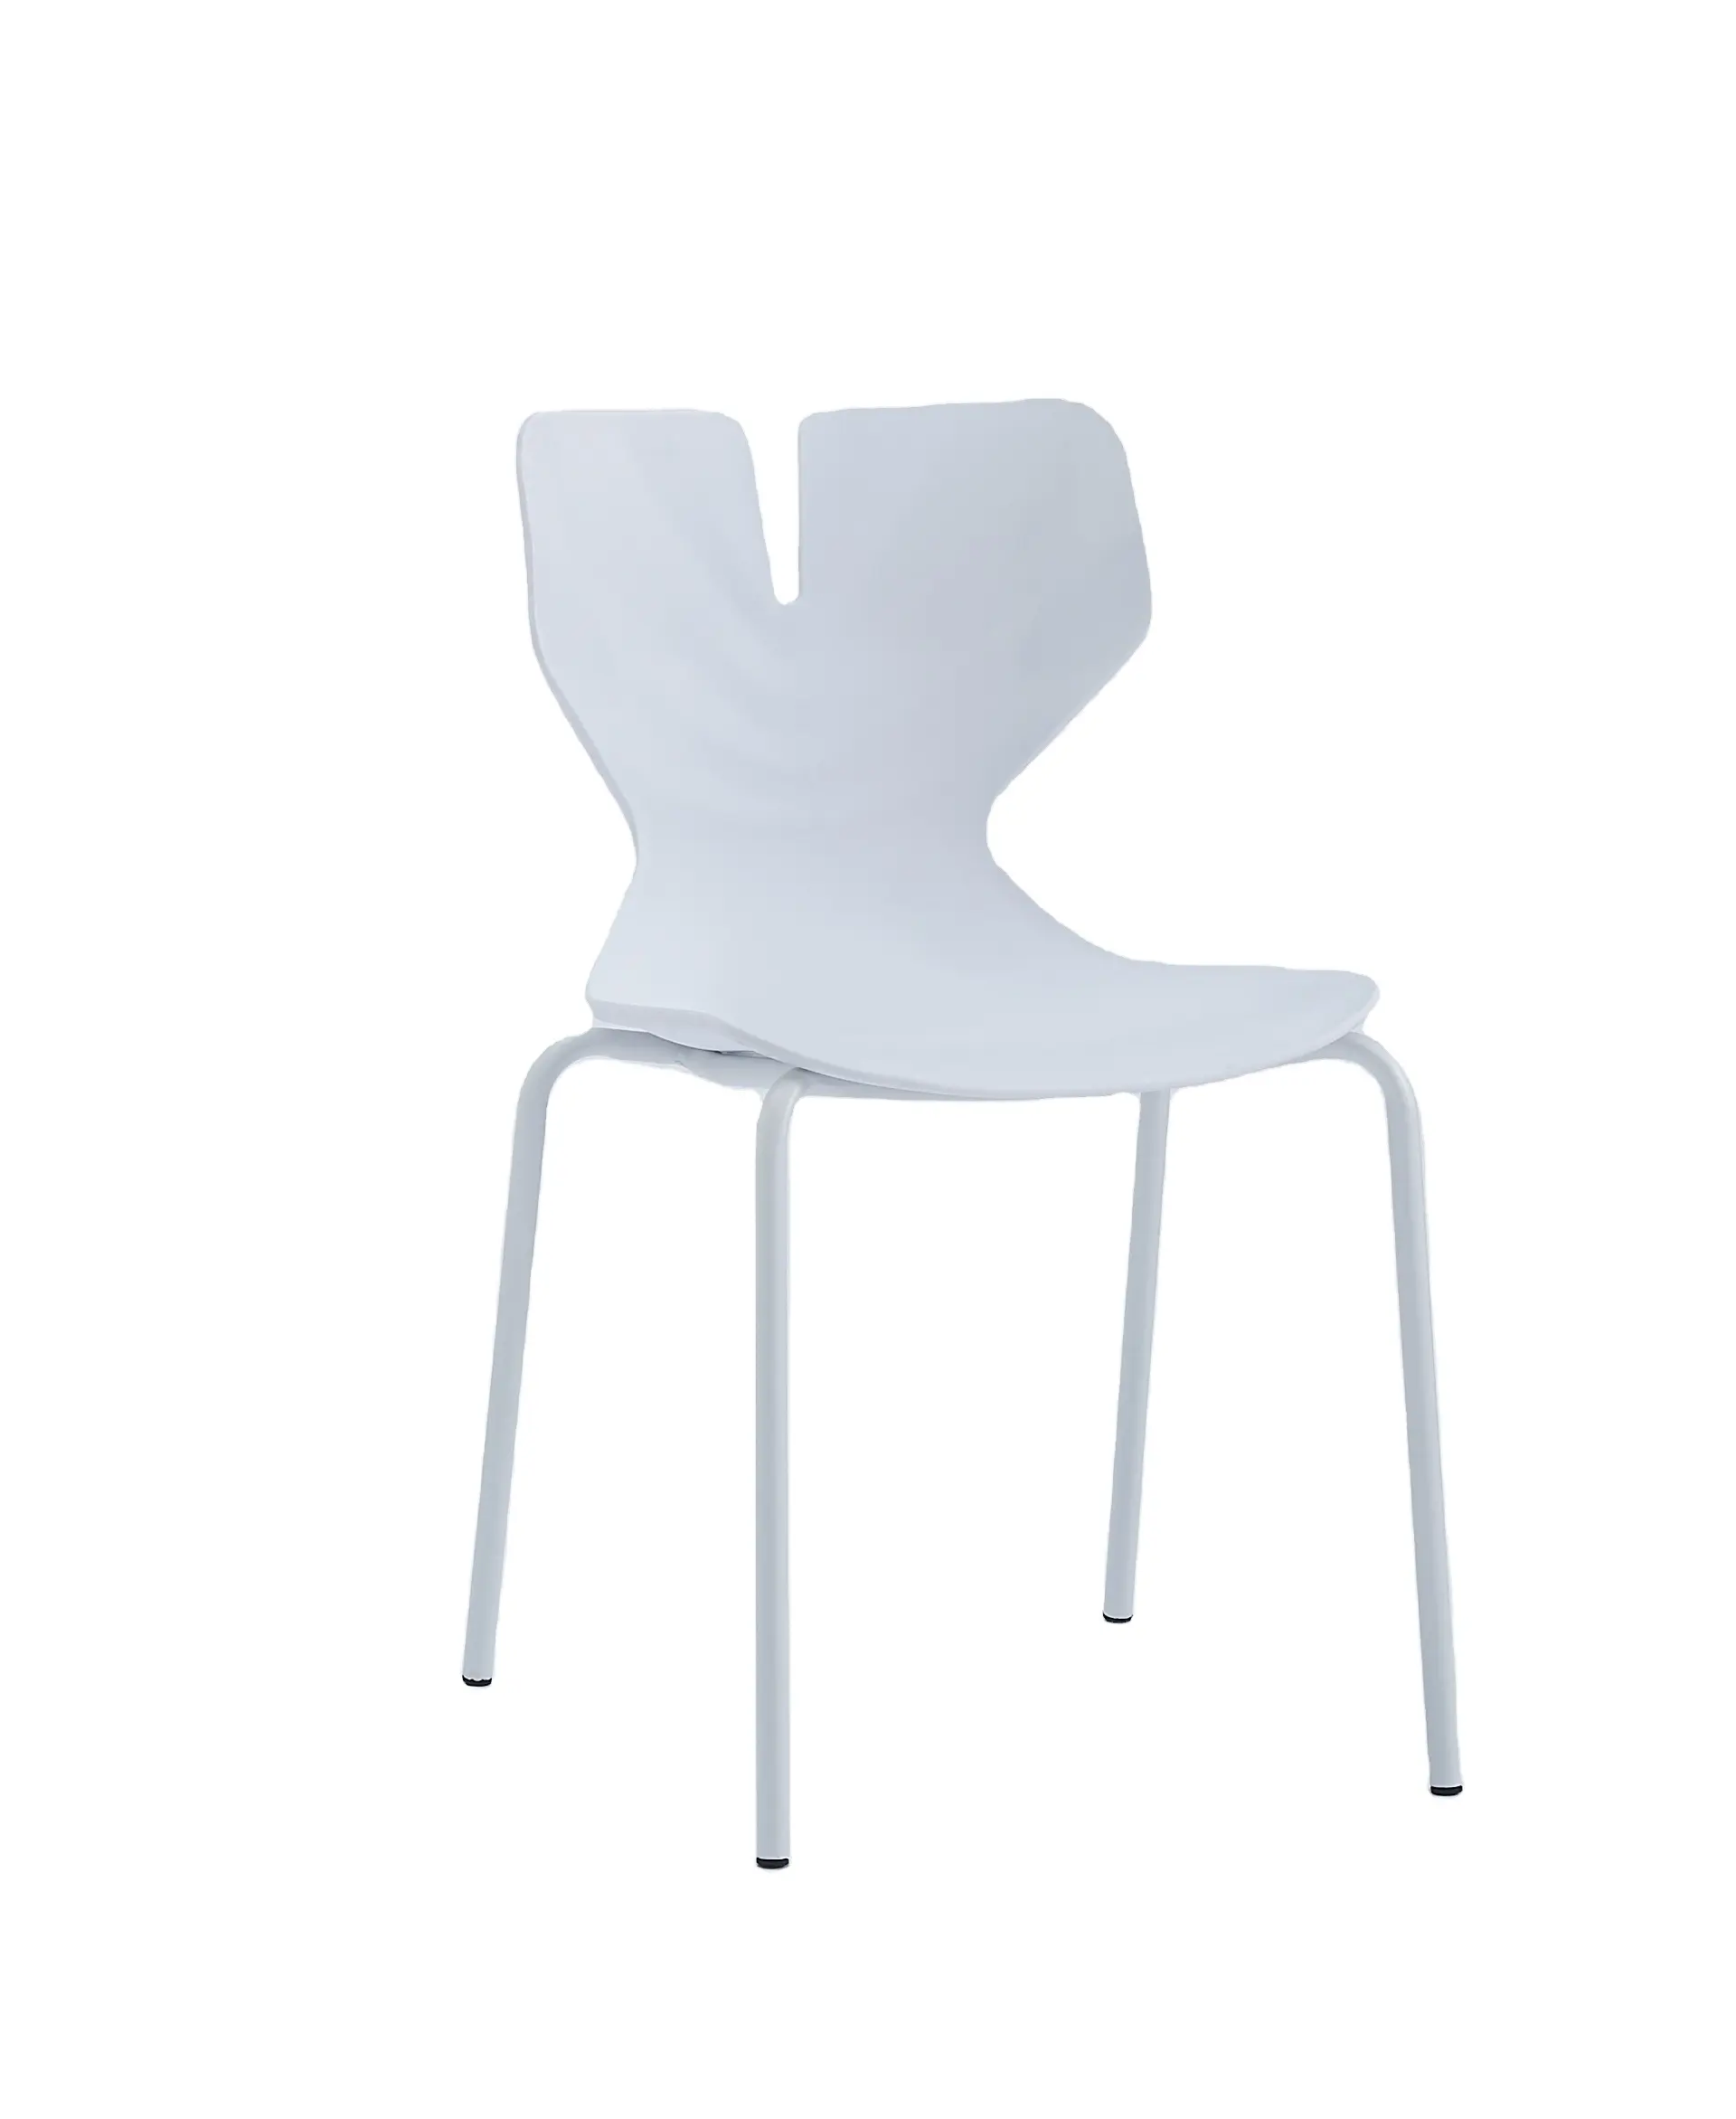 Современные дизайнерские пластиковые стулья для конференц-зала со спинкой сиденья из ПП для офиса, встречи, столовой, мебели для домашнего использования